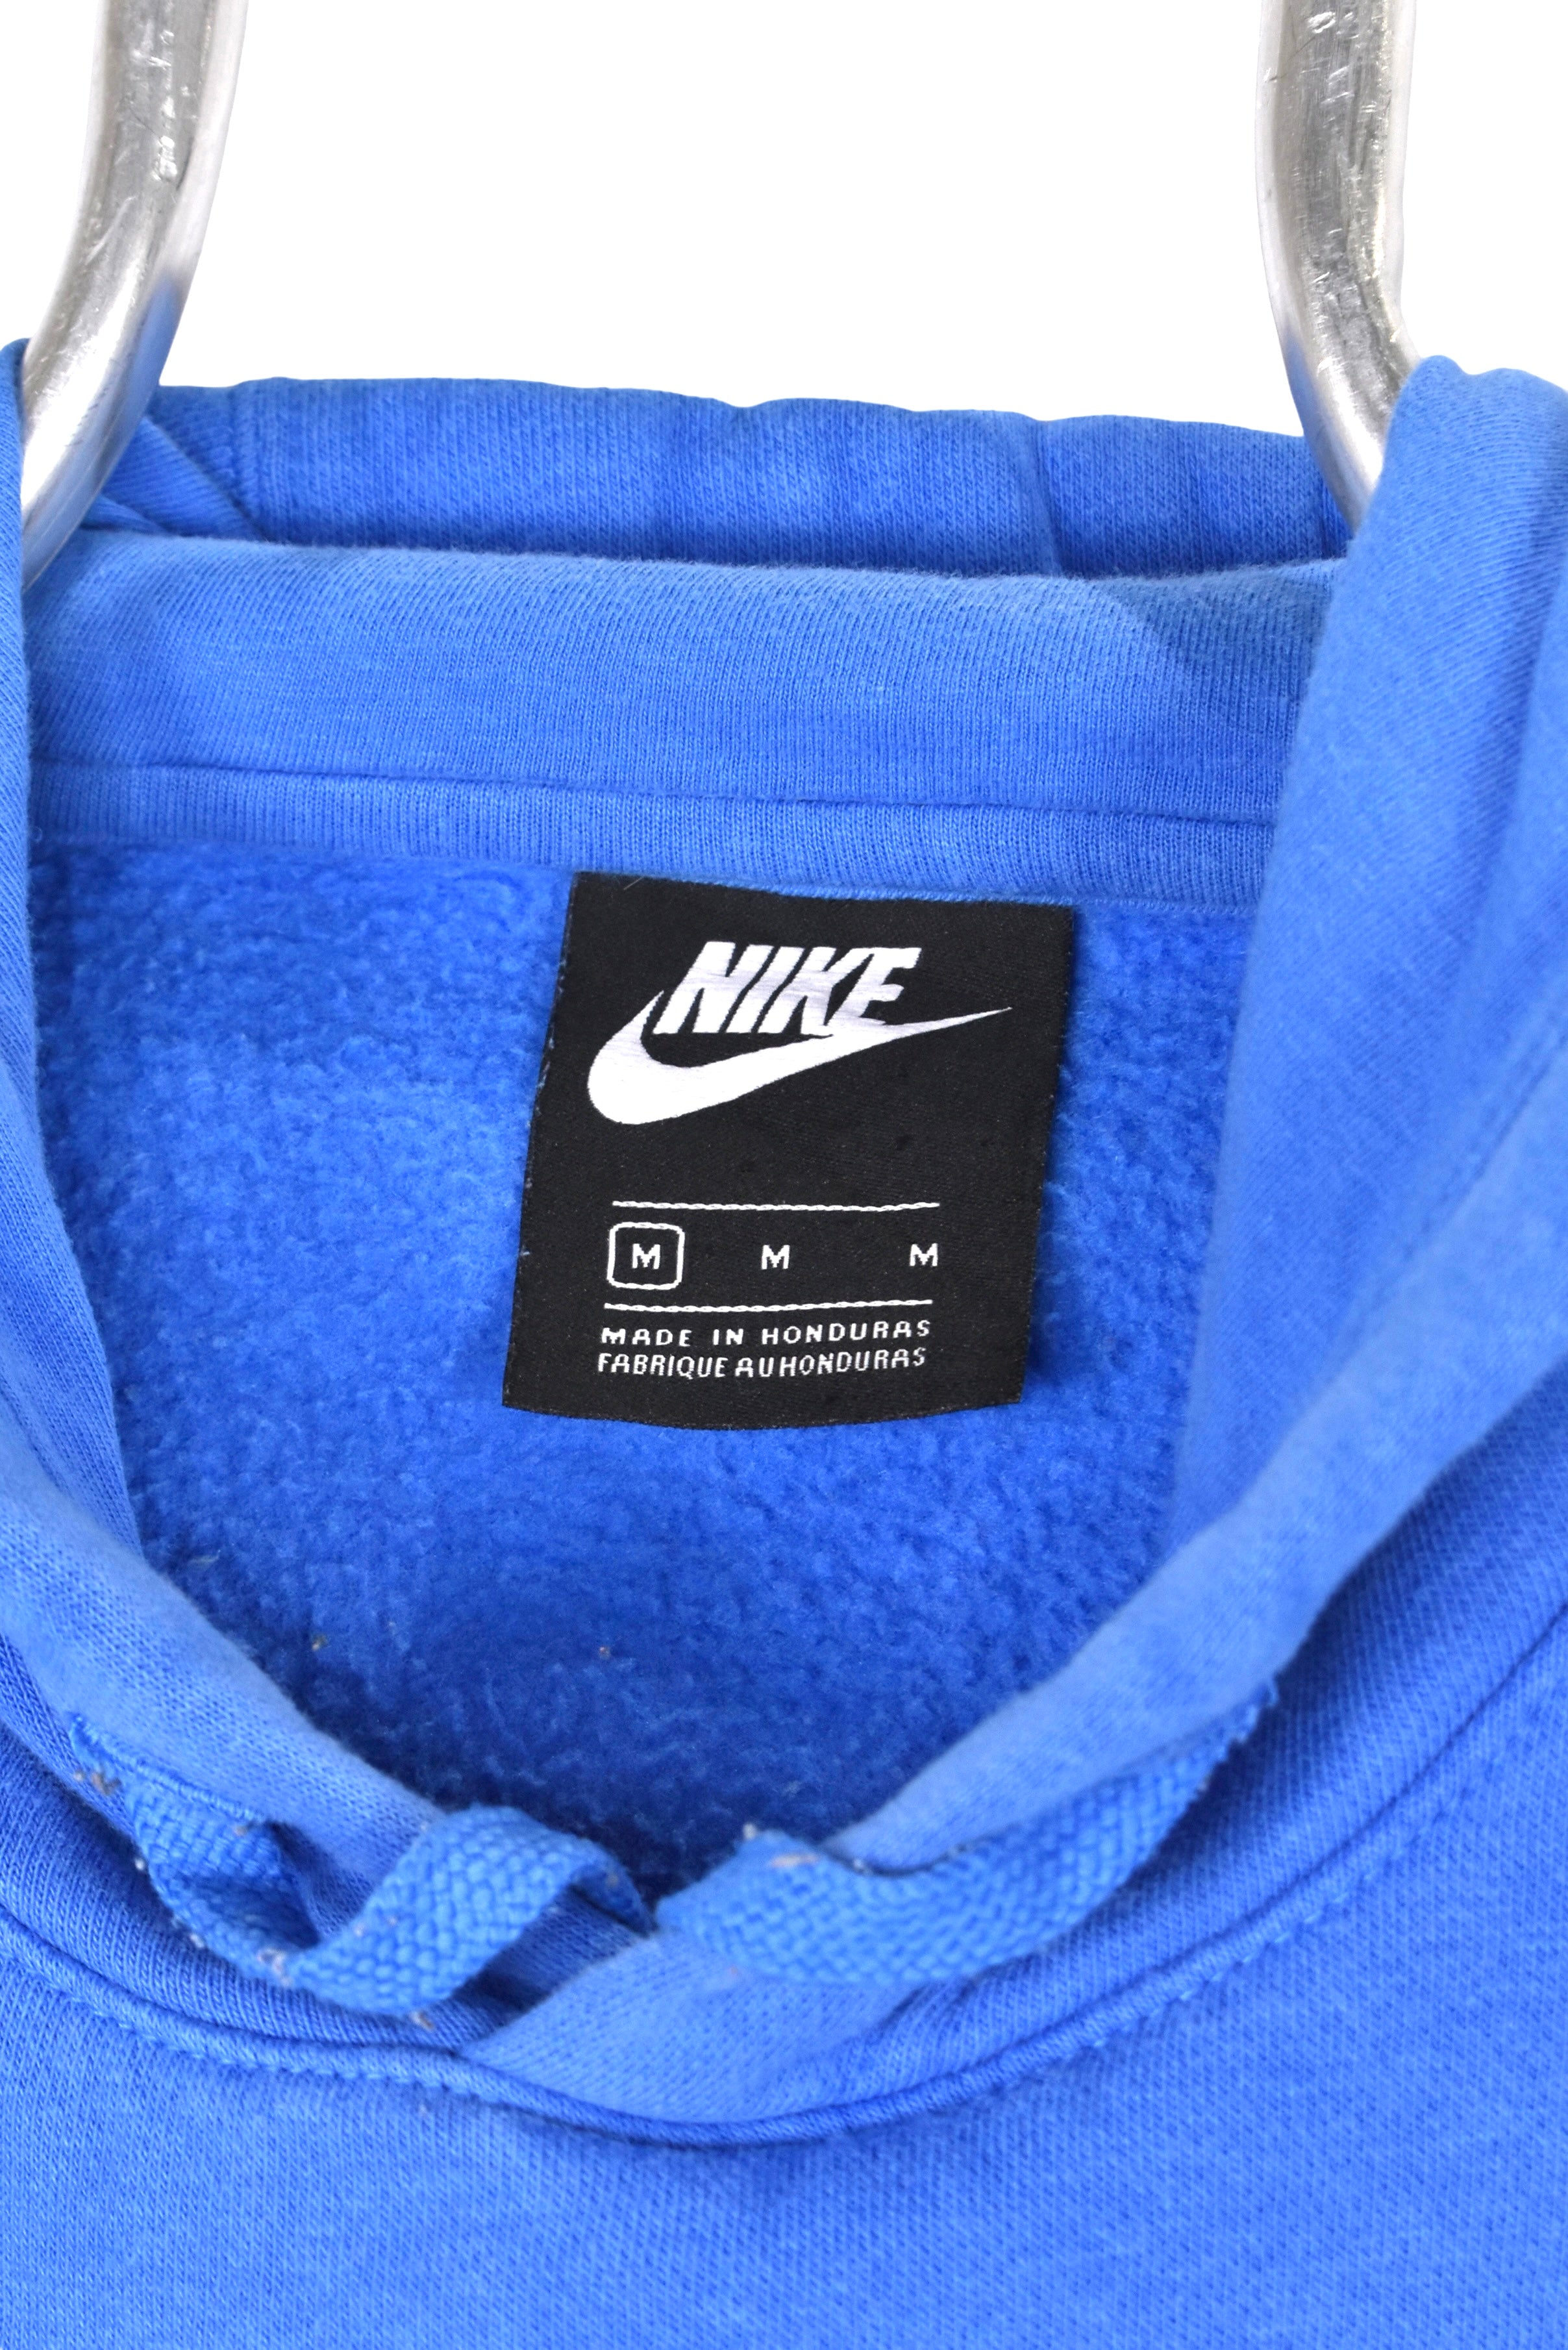 Vintage Nike hoodie, blue embroidered sweatshirt - Medium